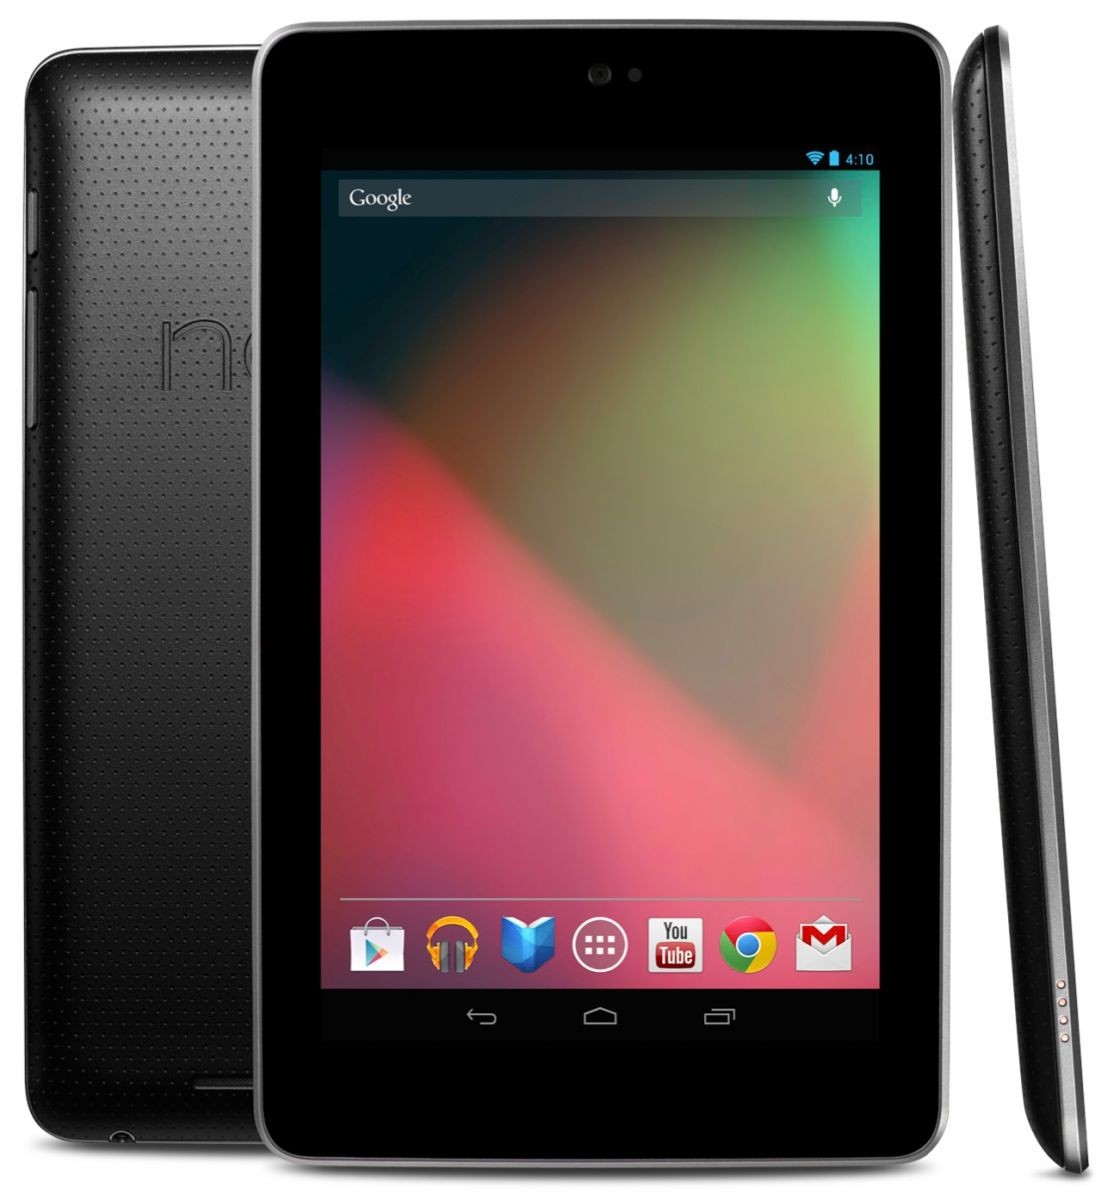 Realice llamadas telefónicas en la tableta Android Nexus 7 con Google Voice [Hack]